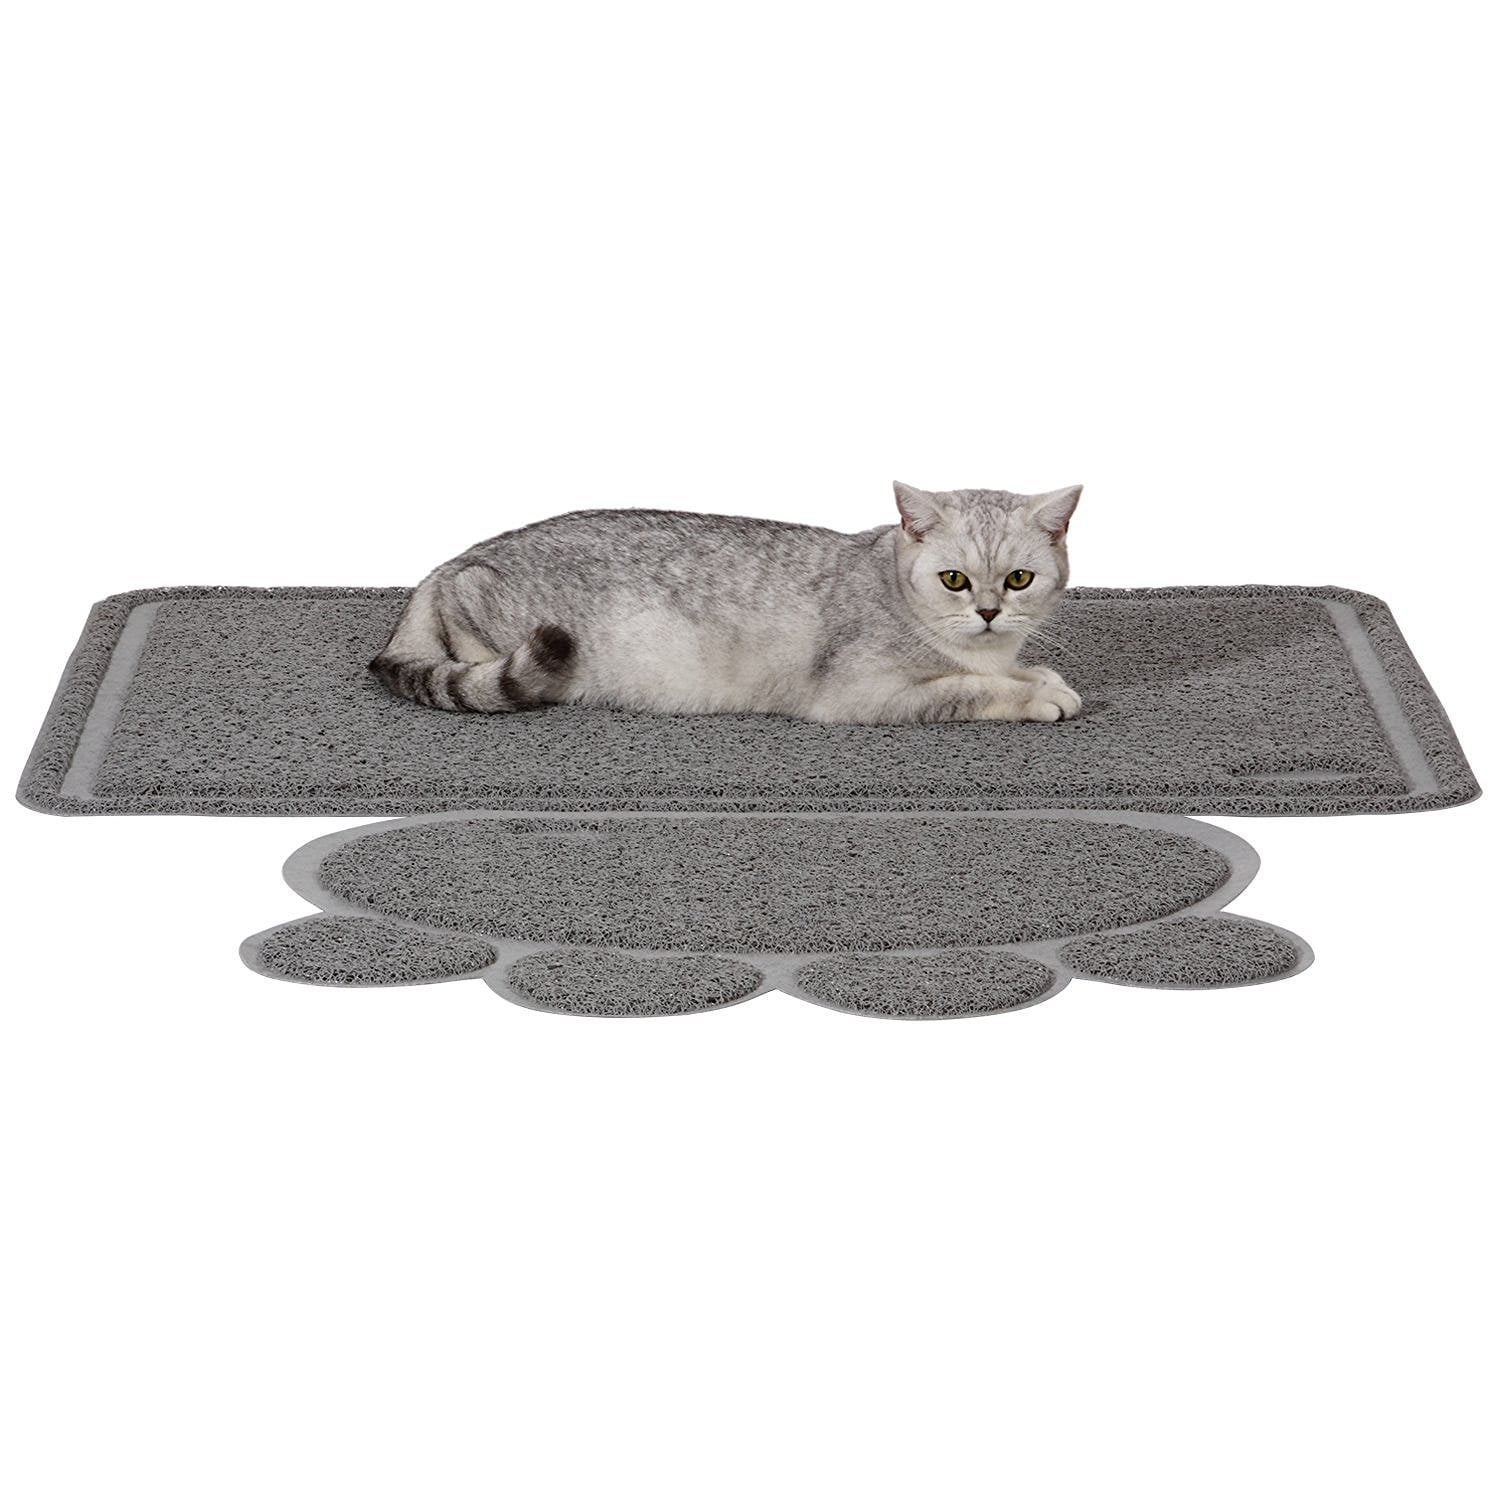  Garoopion Cat Litter Mat, X-Large Size Litter Box Mat